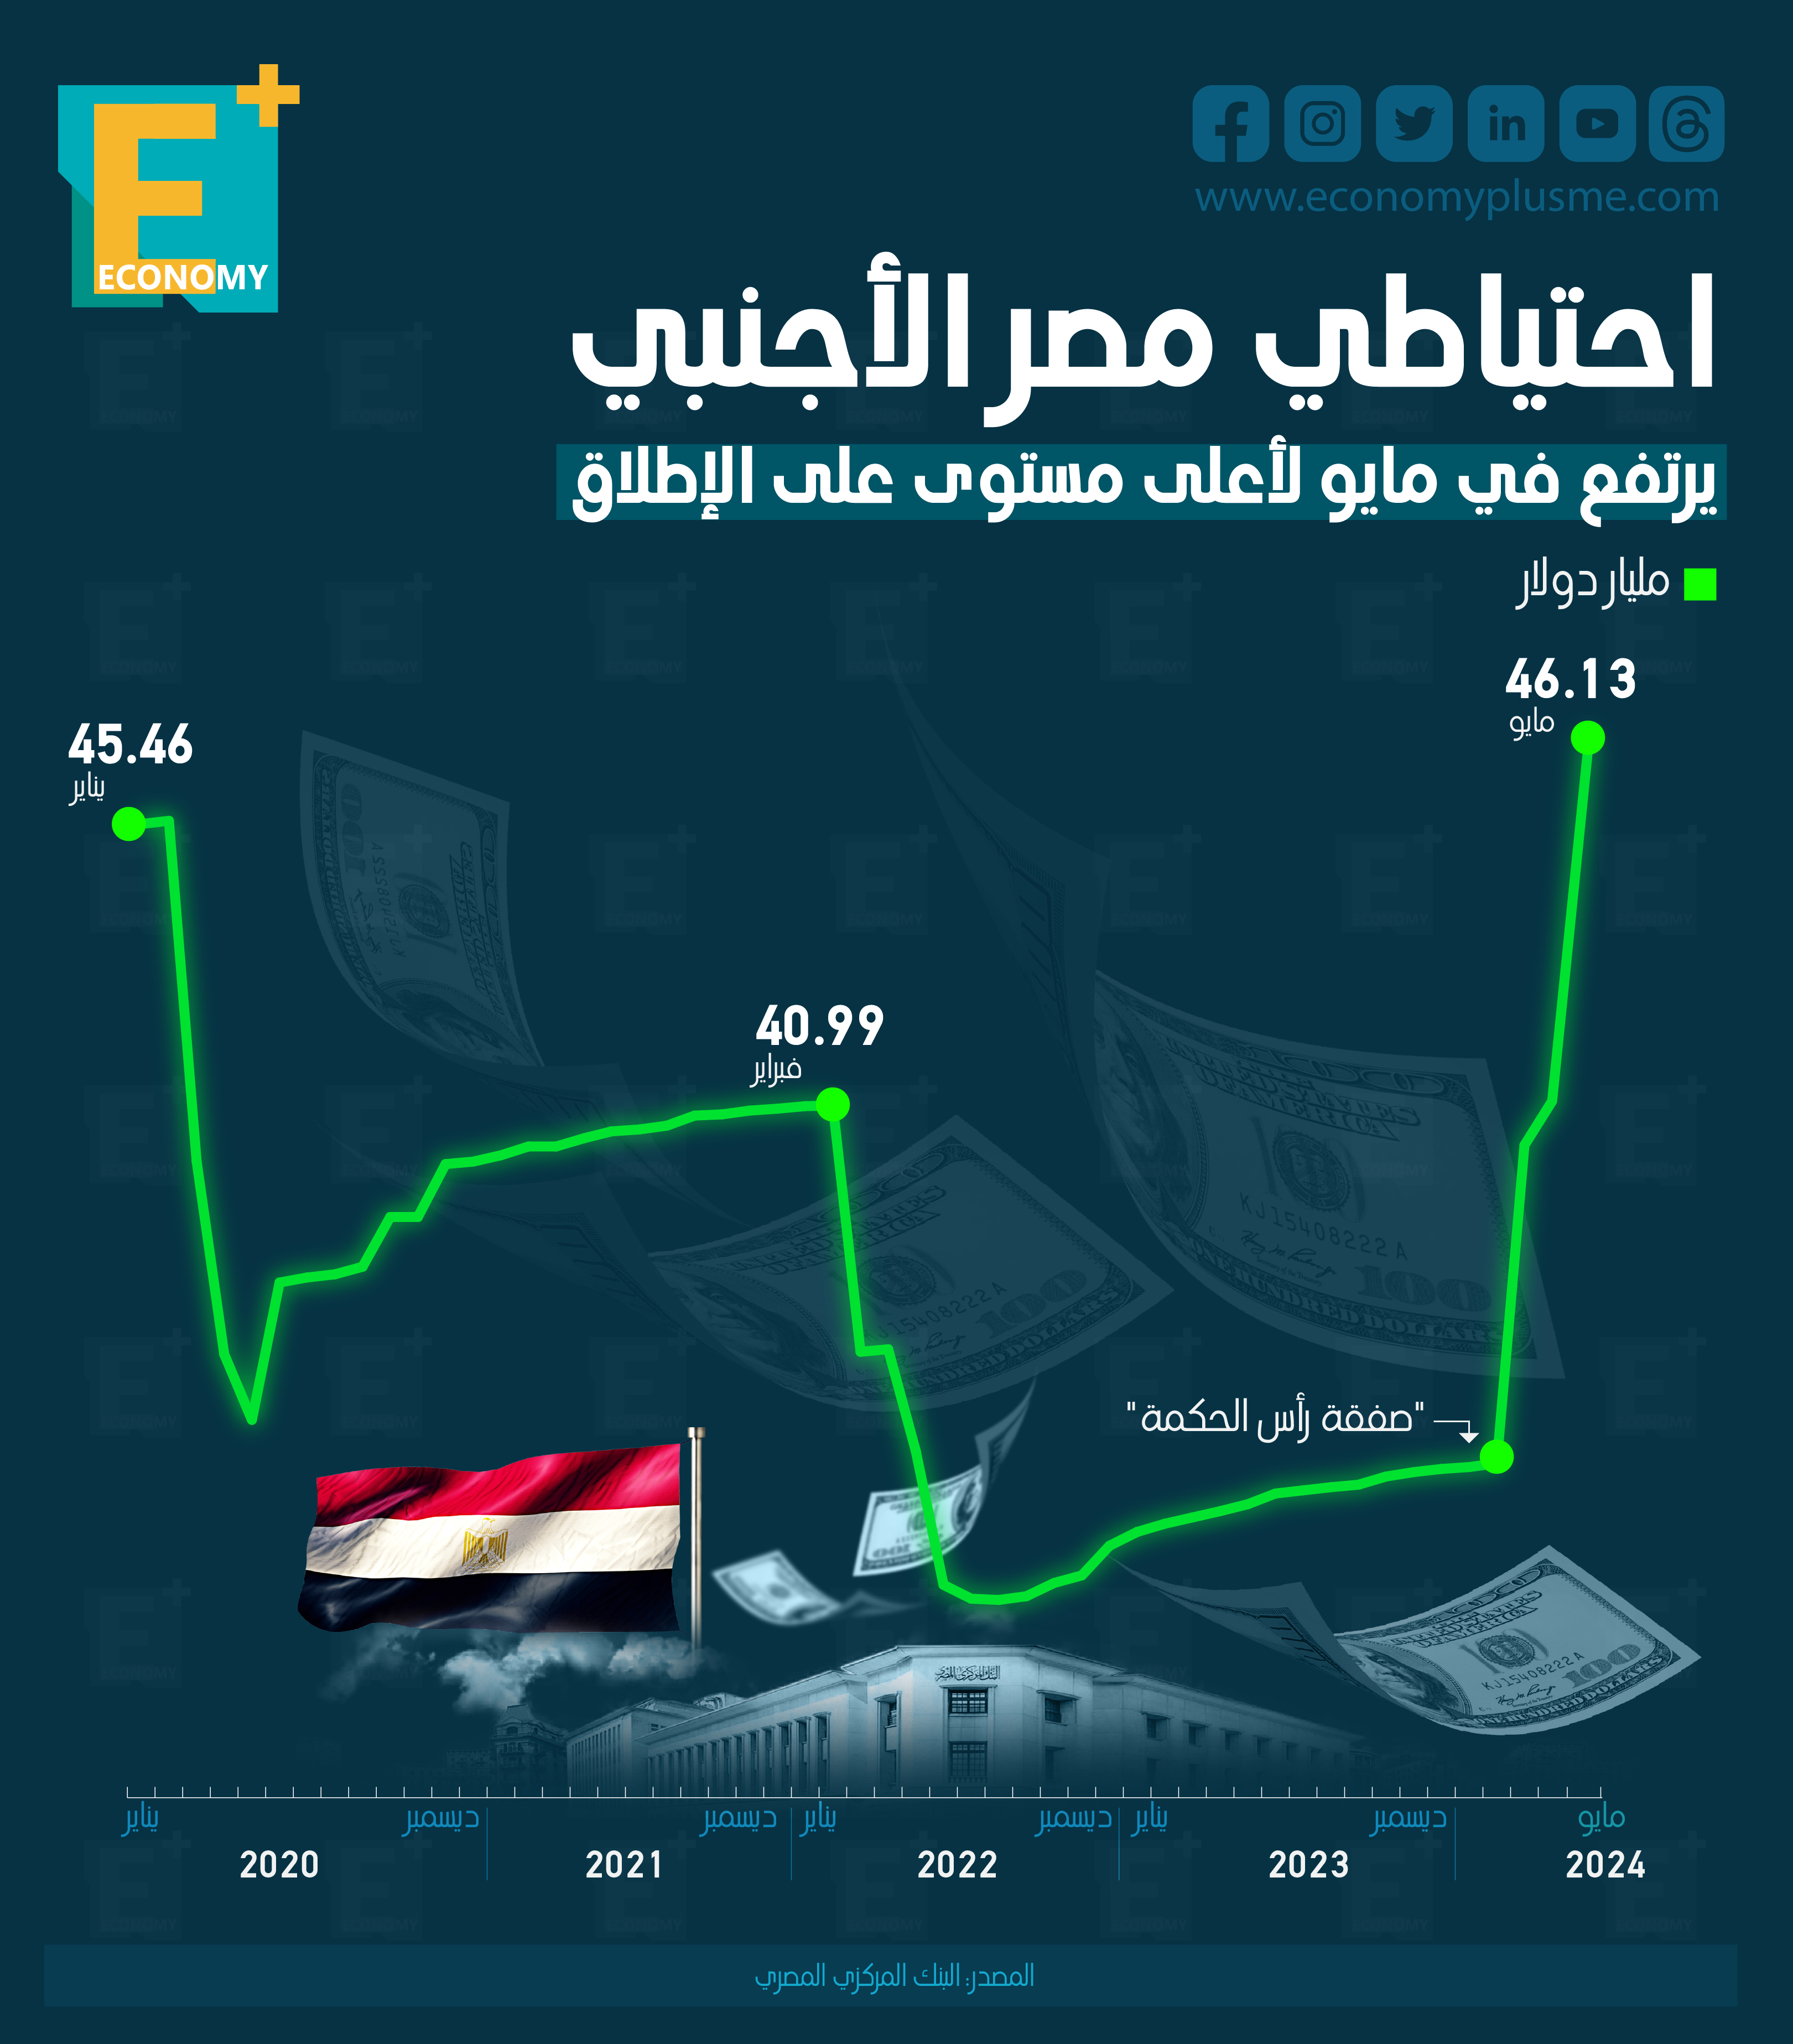 احتياطي مصر الأجنبي يرتفع في مايو لأعلى مستوى على الإطلاق